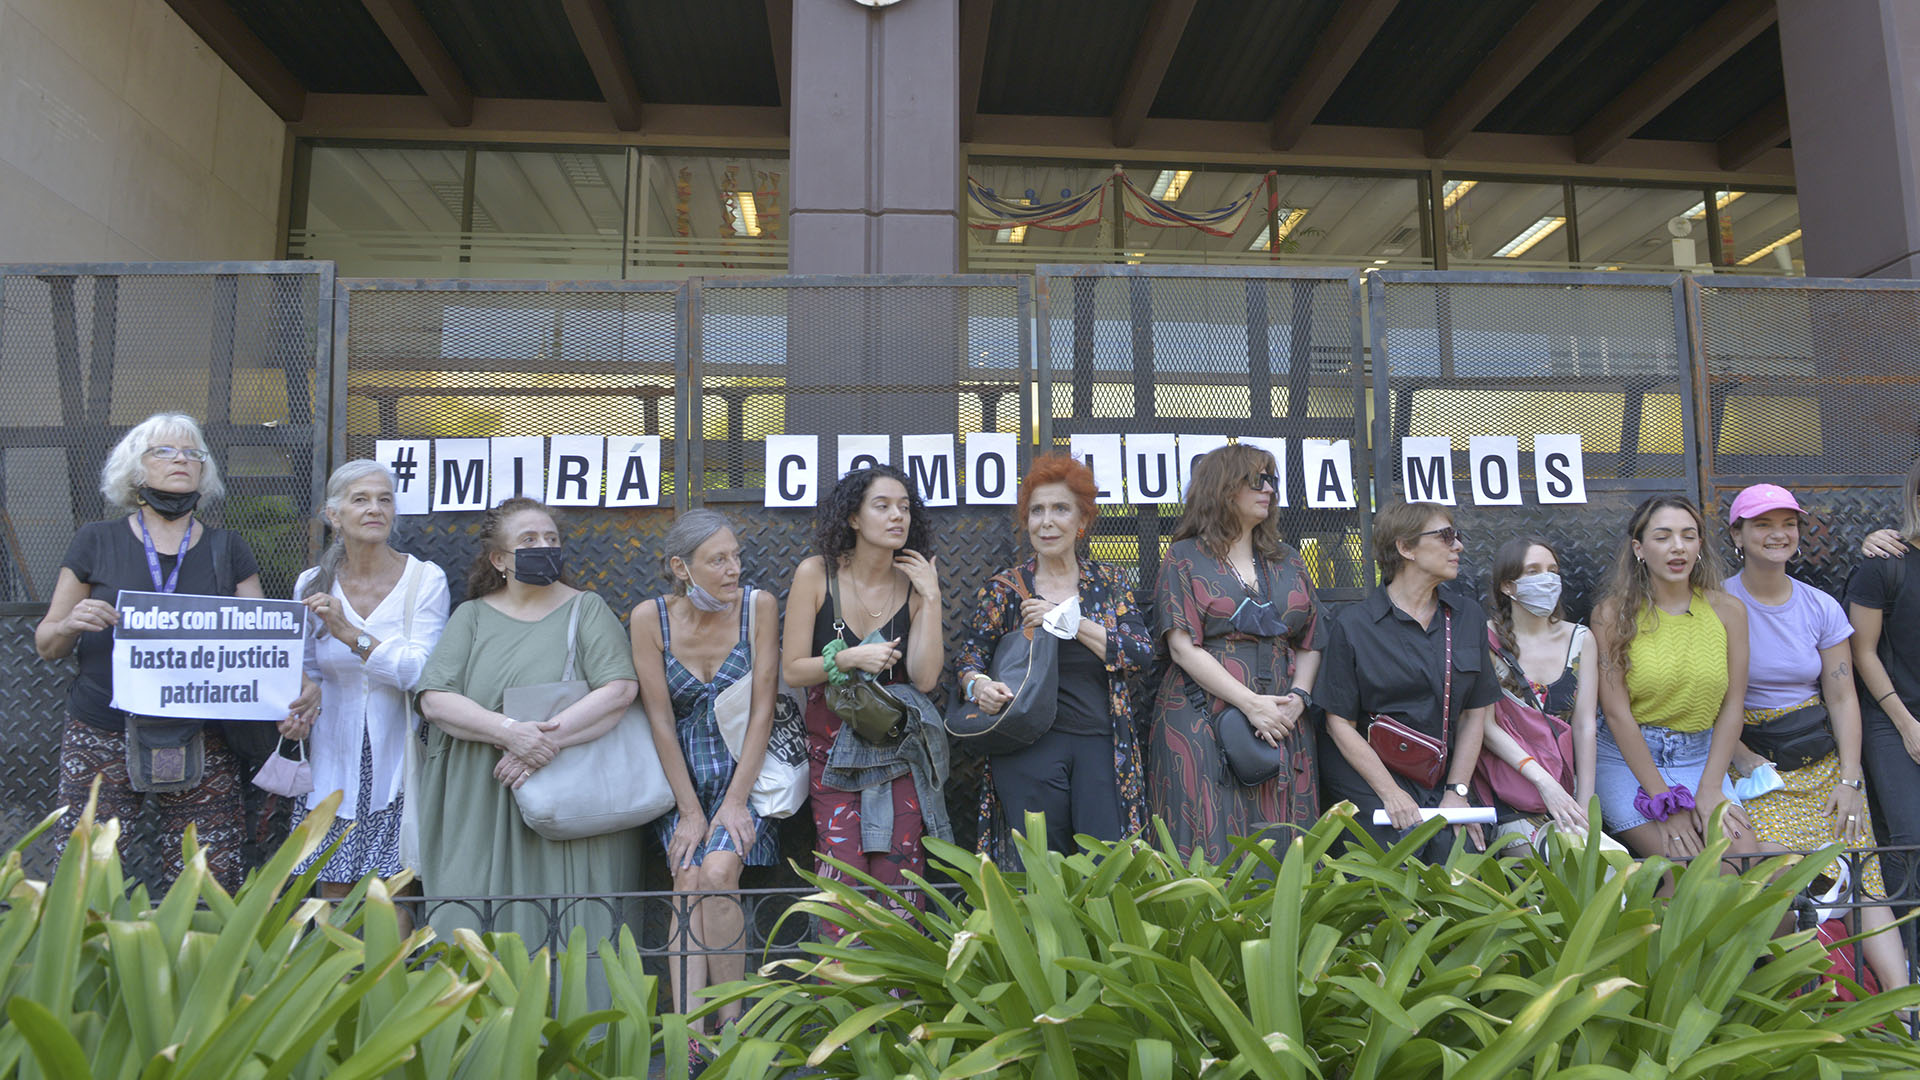 En febrero de 2022, Thelma Fardin junto a varias actrices que la acompañaron en una marcha frente al consulado de Brasil, bajo el lema "Mirá cómo luchamos"